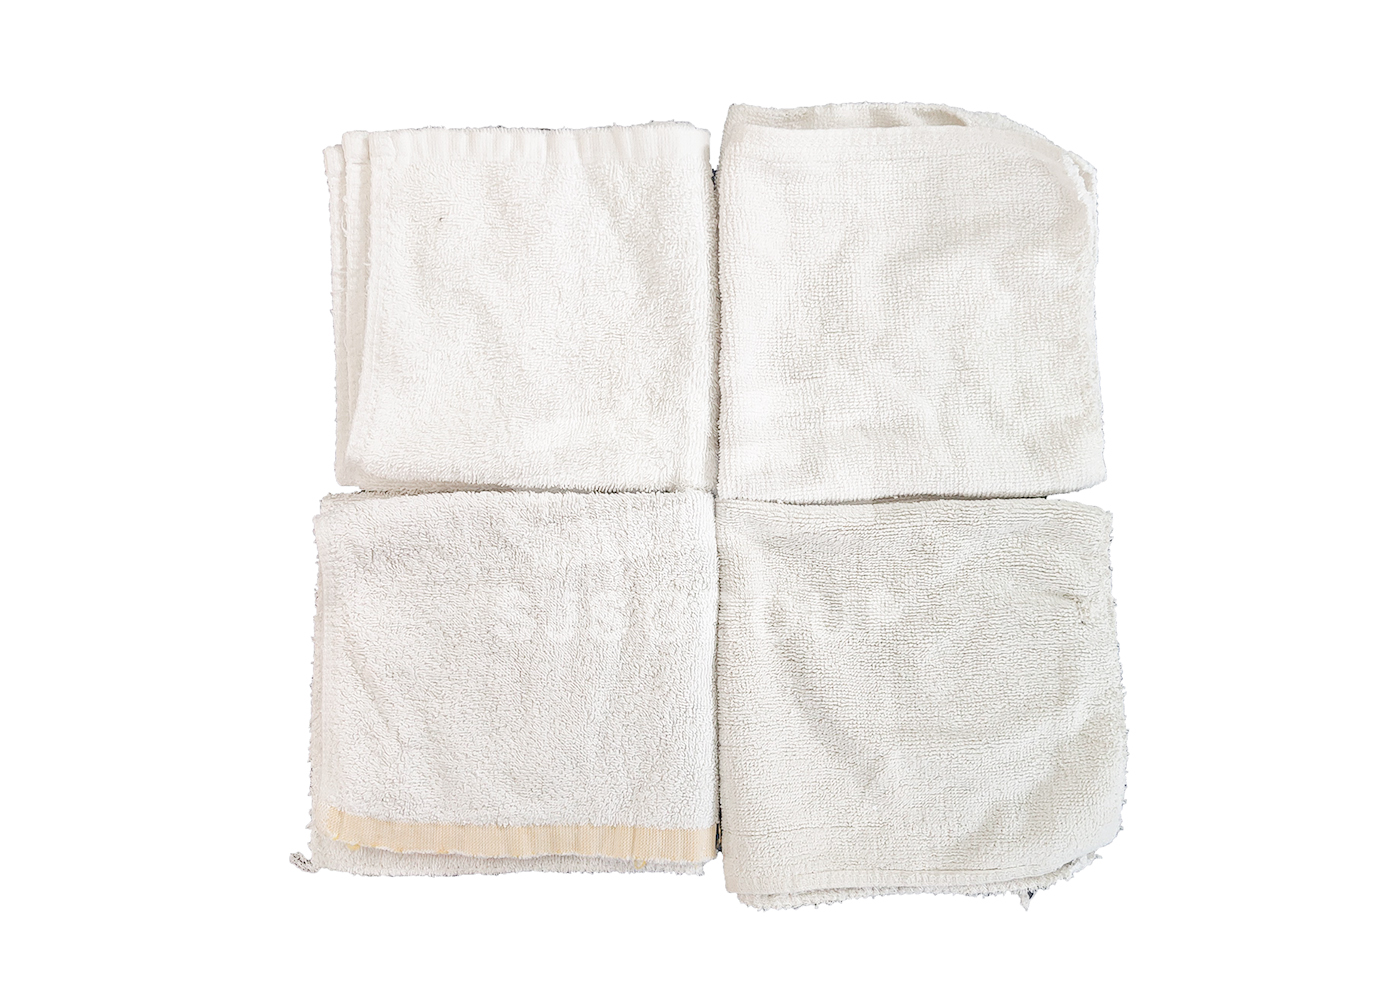 白色毛巾类抹布-白色裁剪浴巾混合